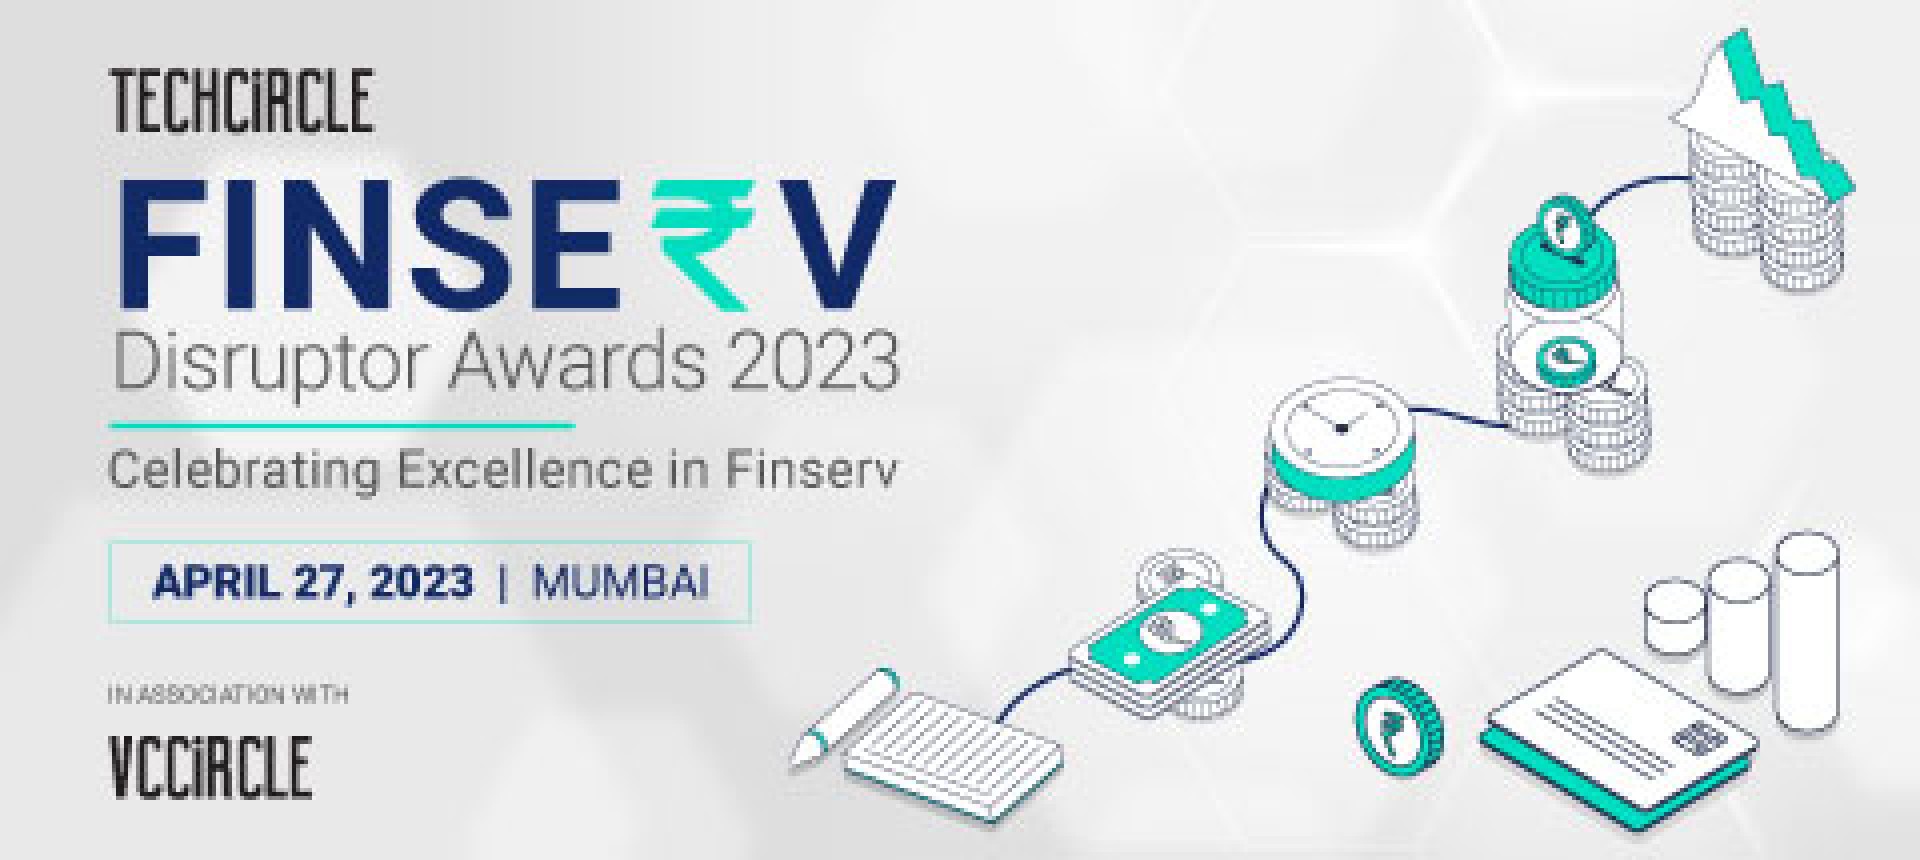 FinServ Innovation Summit & Awards